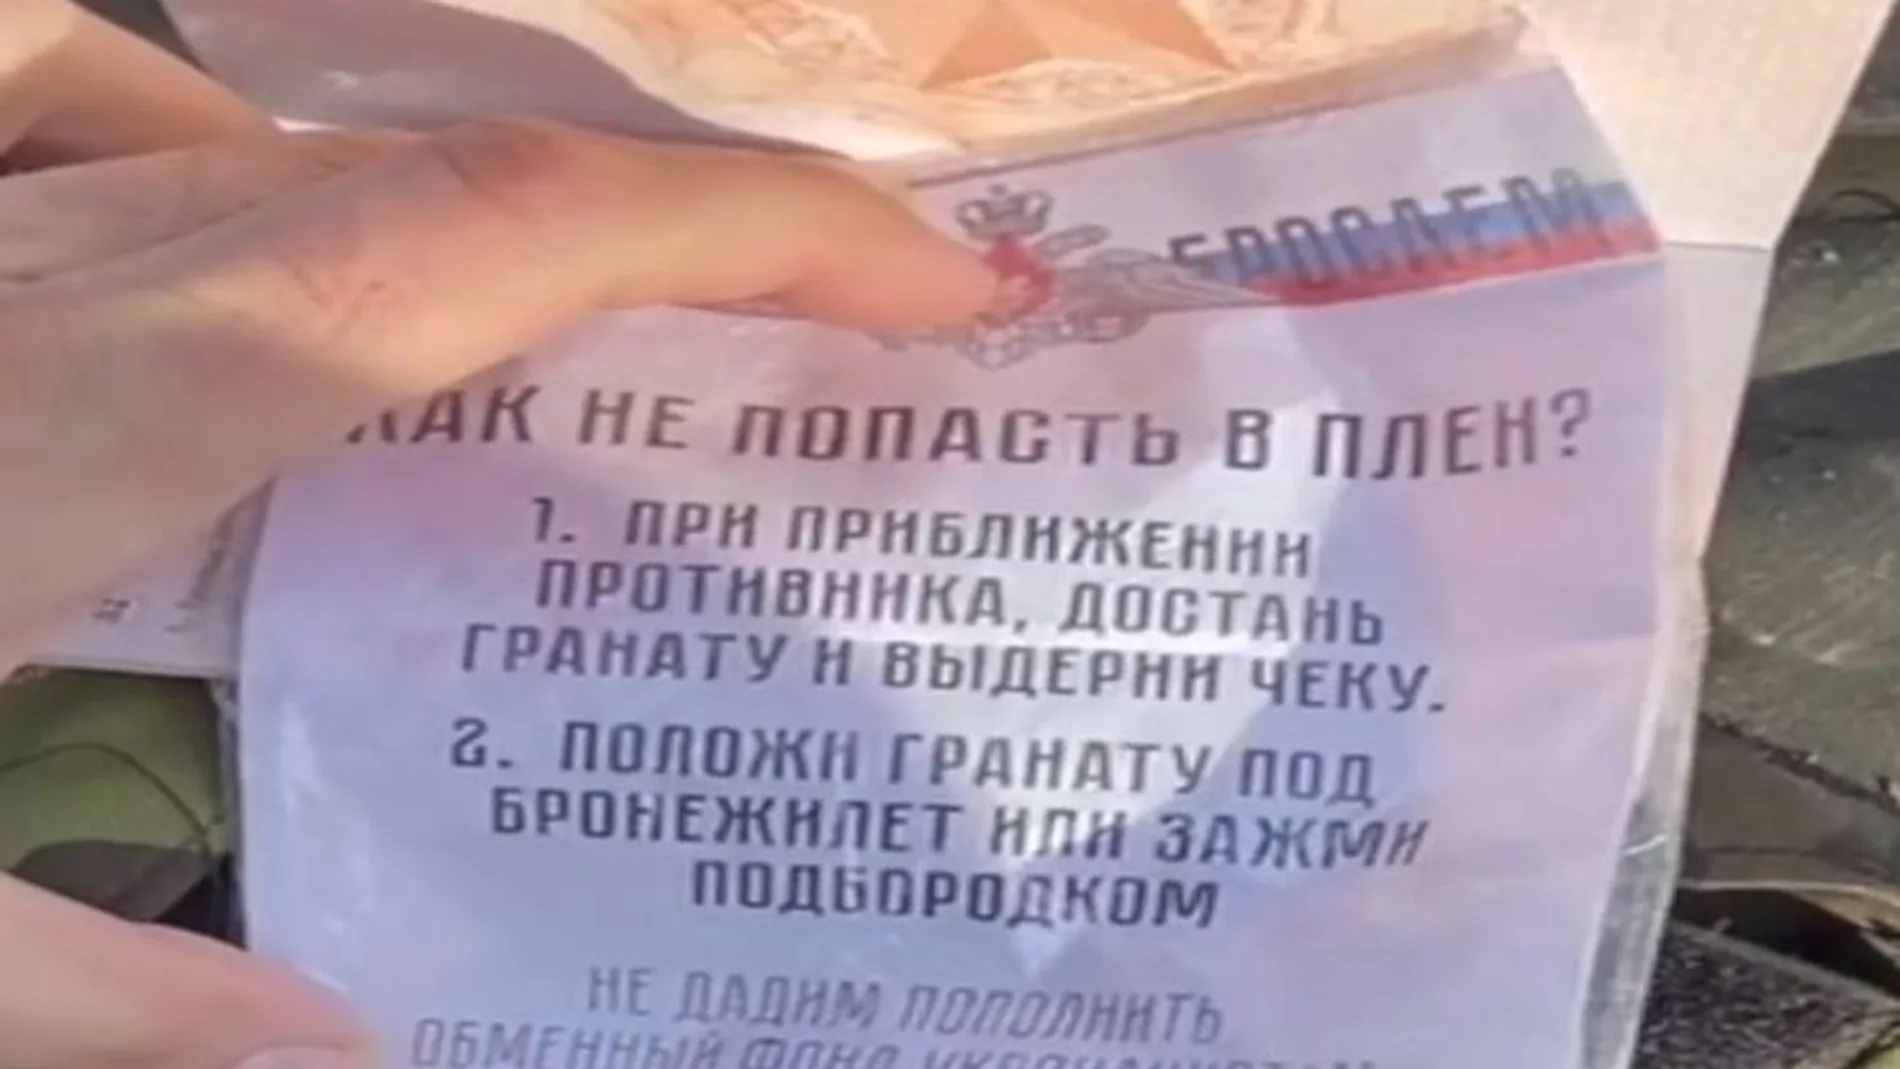 "Pon una granada en el chaleco y tira la anilla", la terrible orden recibida por los soldados rusos en Ucrania